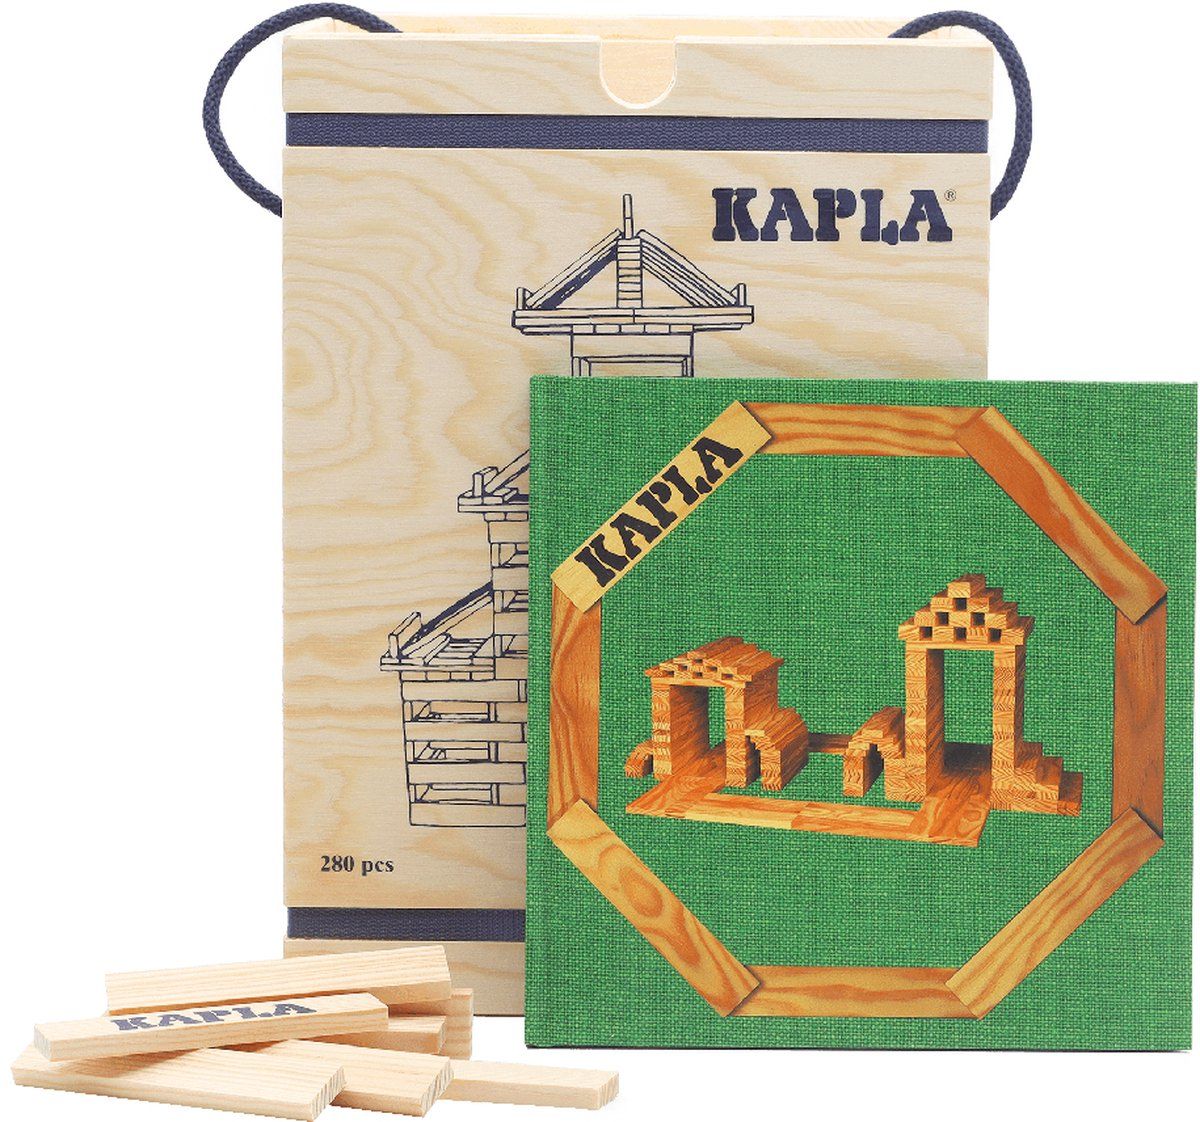 kapla-kapla-blank-constructiespeelgoed-groen-voorbeeldboek-280-plankjes